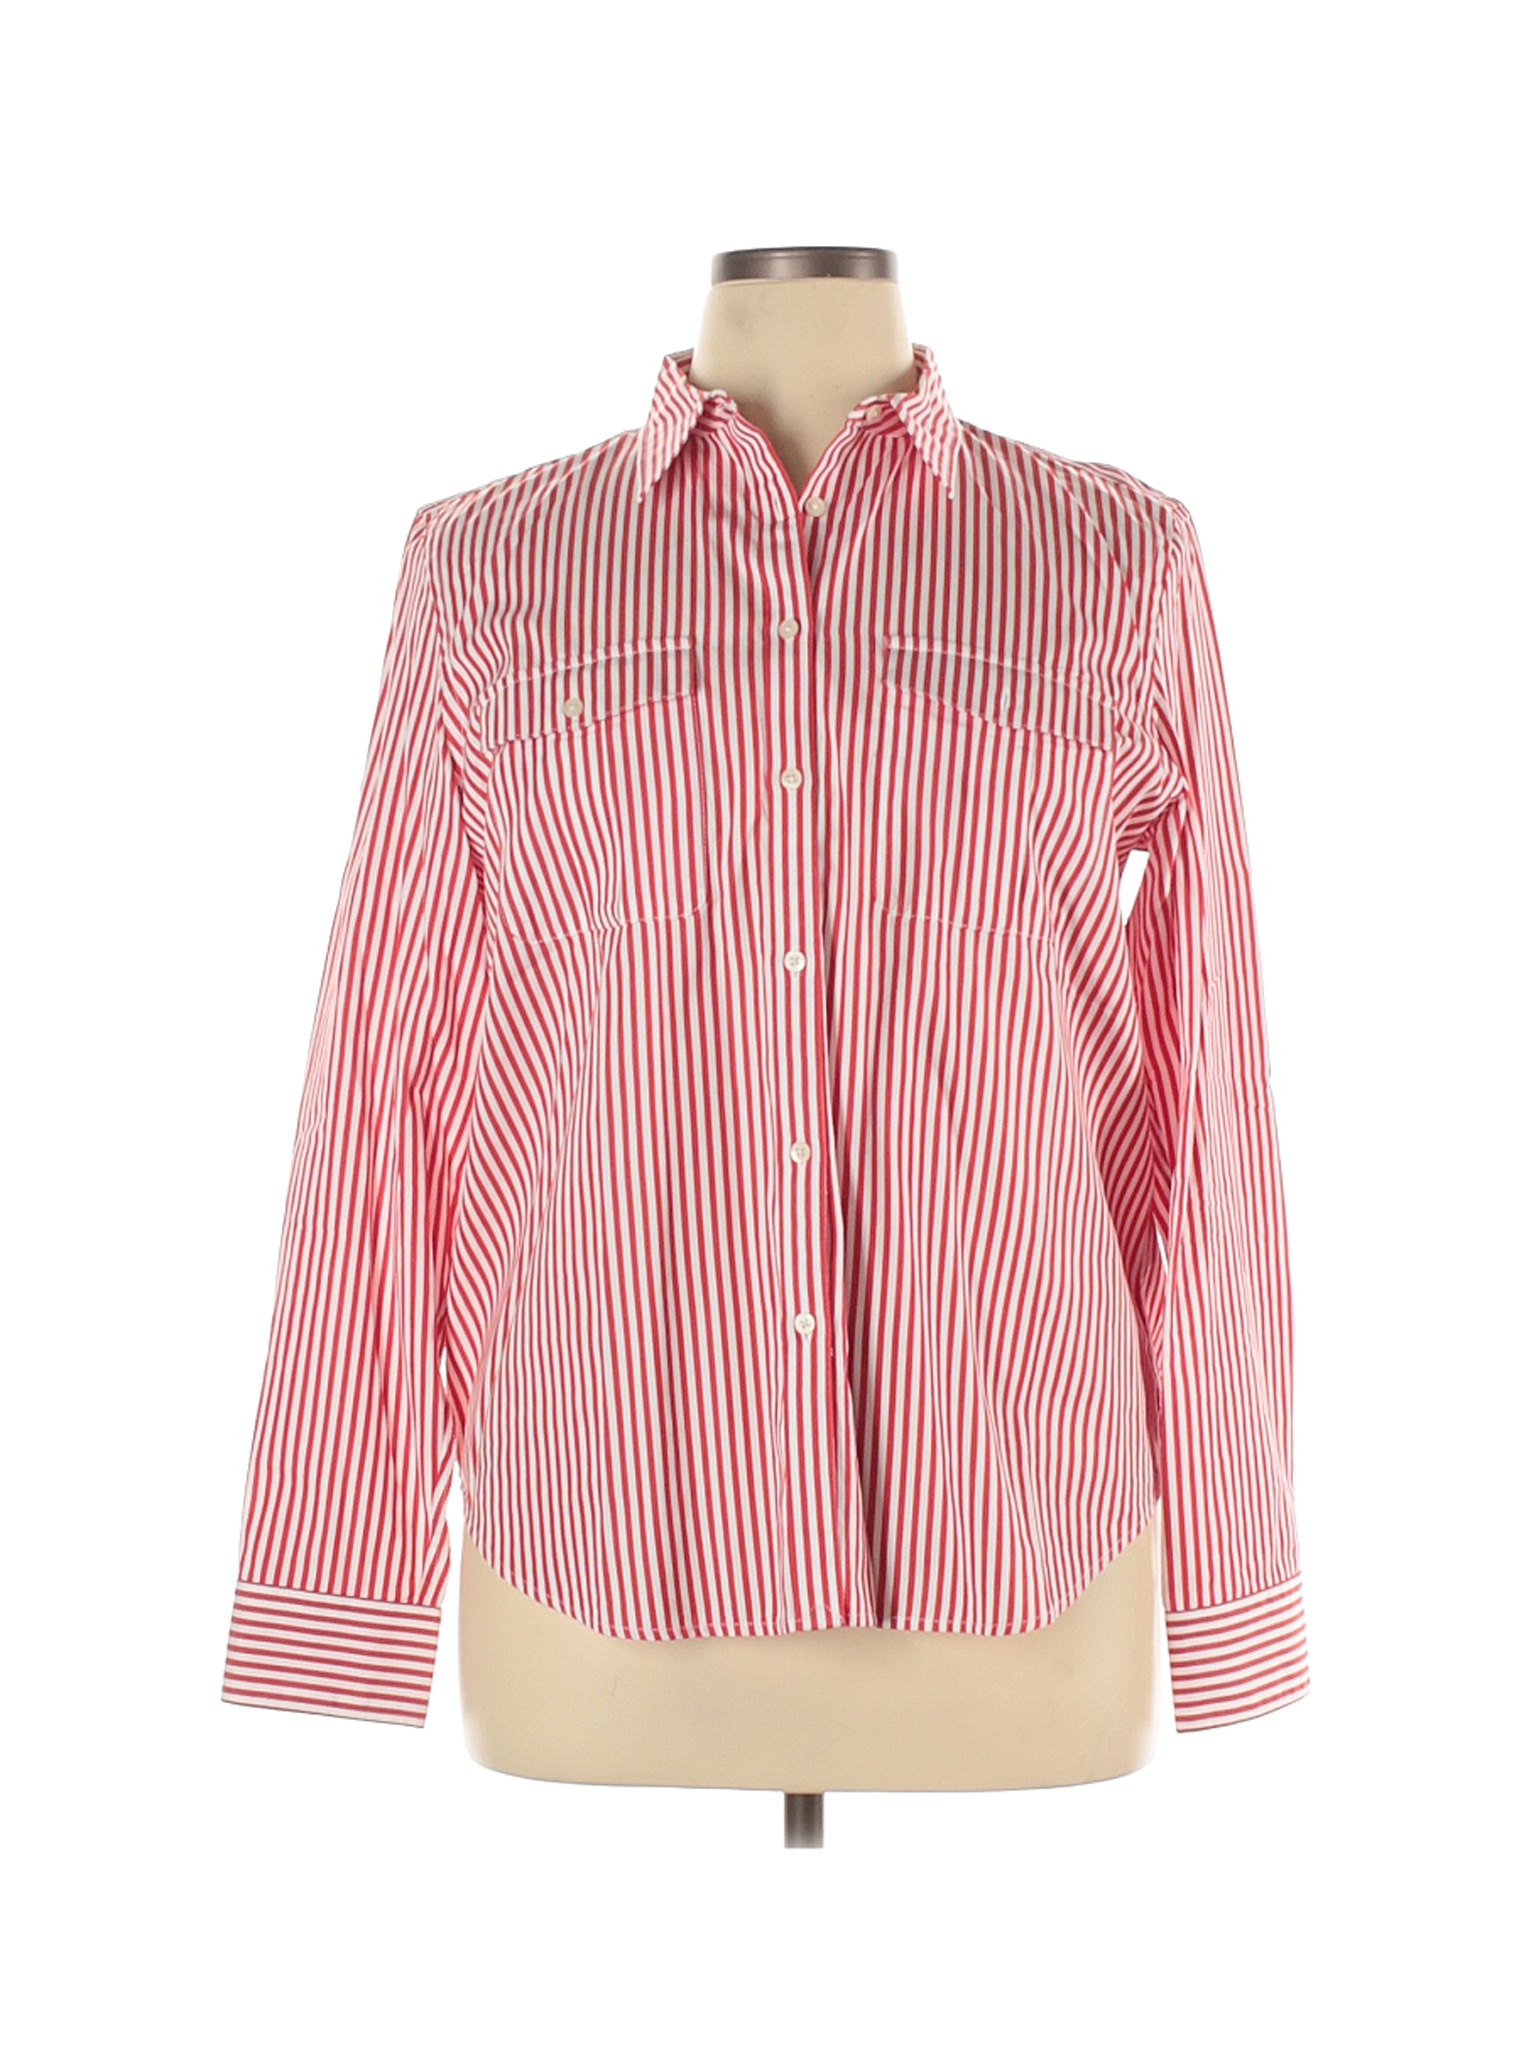 Lauren by Ralph Lauren Women Red Long Sleeve Button-Down Shirt XL | eBay